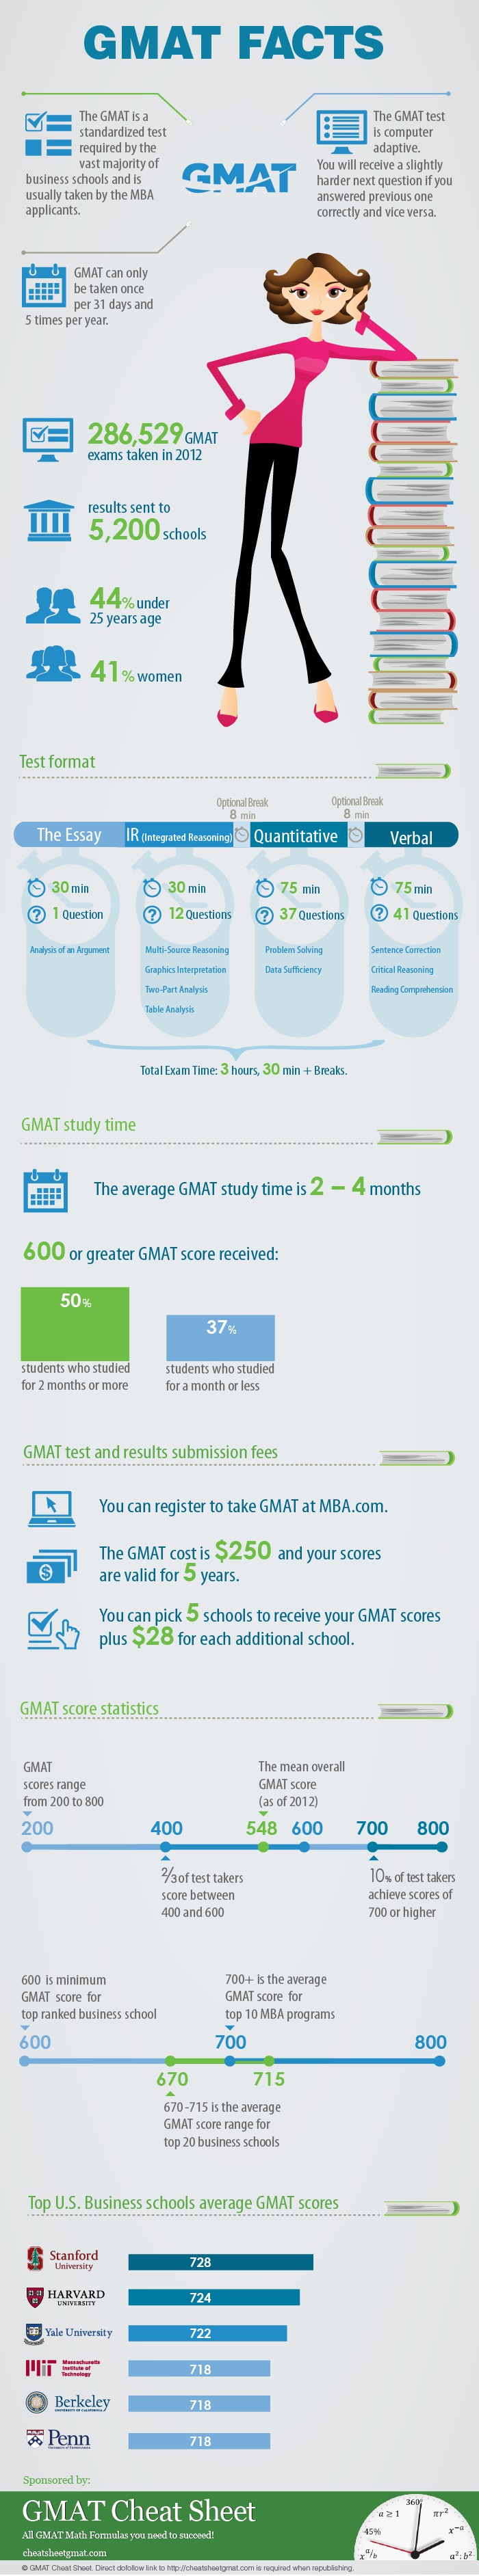 Инфографика от GMAT Cheat Sheet: